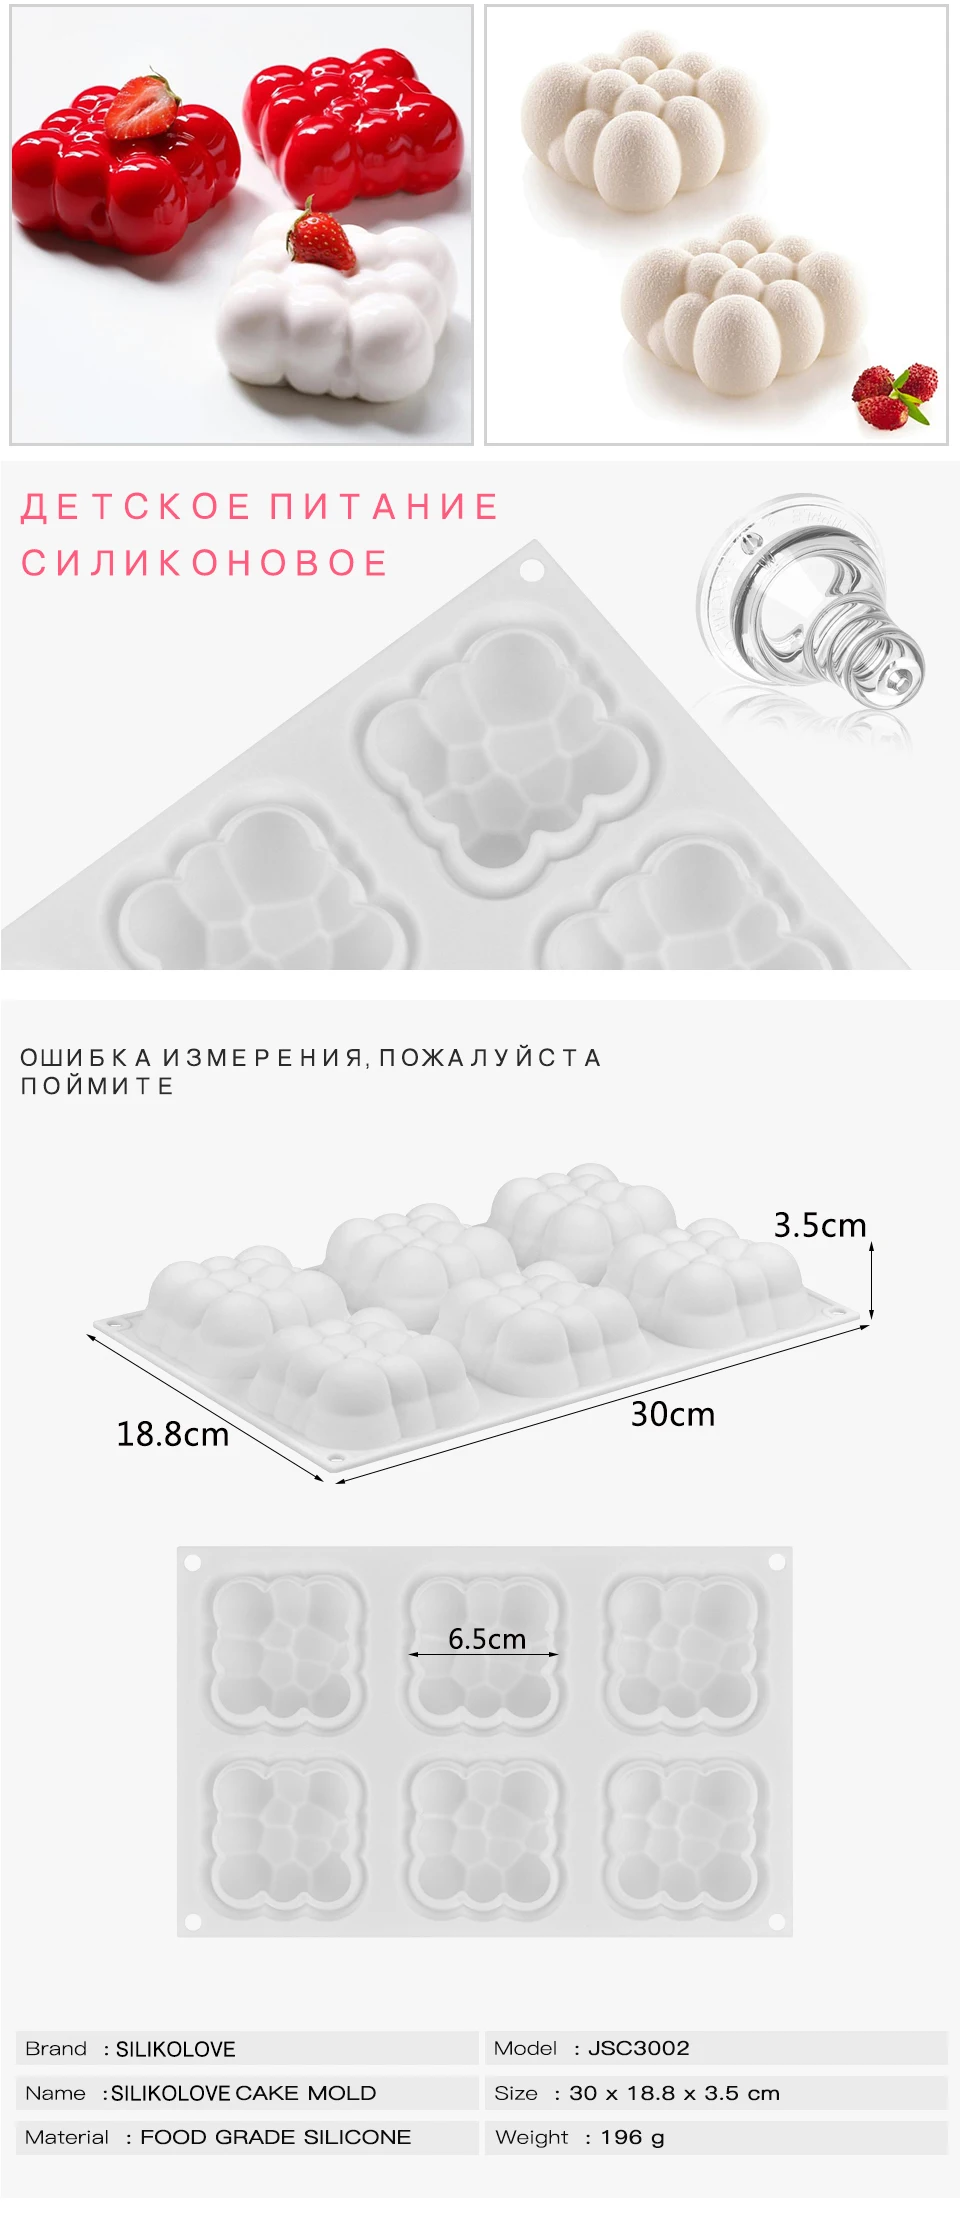 FUNBAKY 3D вогнутый шар облако силиконовая форма для украшения торта инструменты мышь силиконовая форма жаропрочная посуда для десерта Кондитерская форма